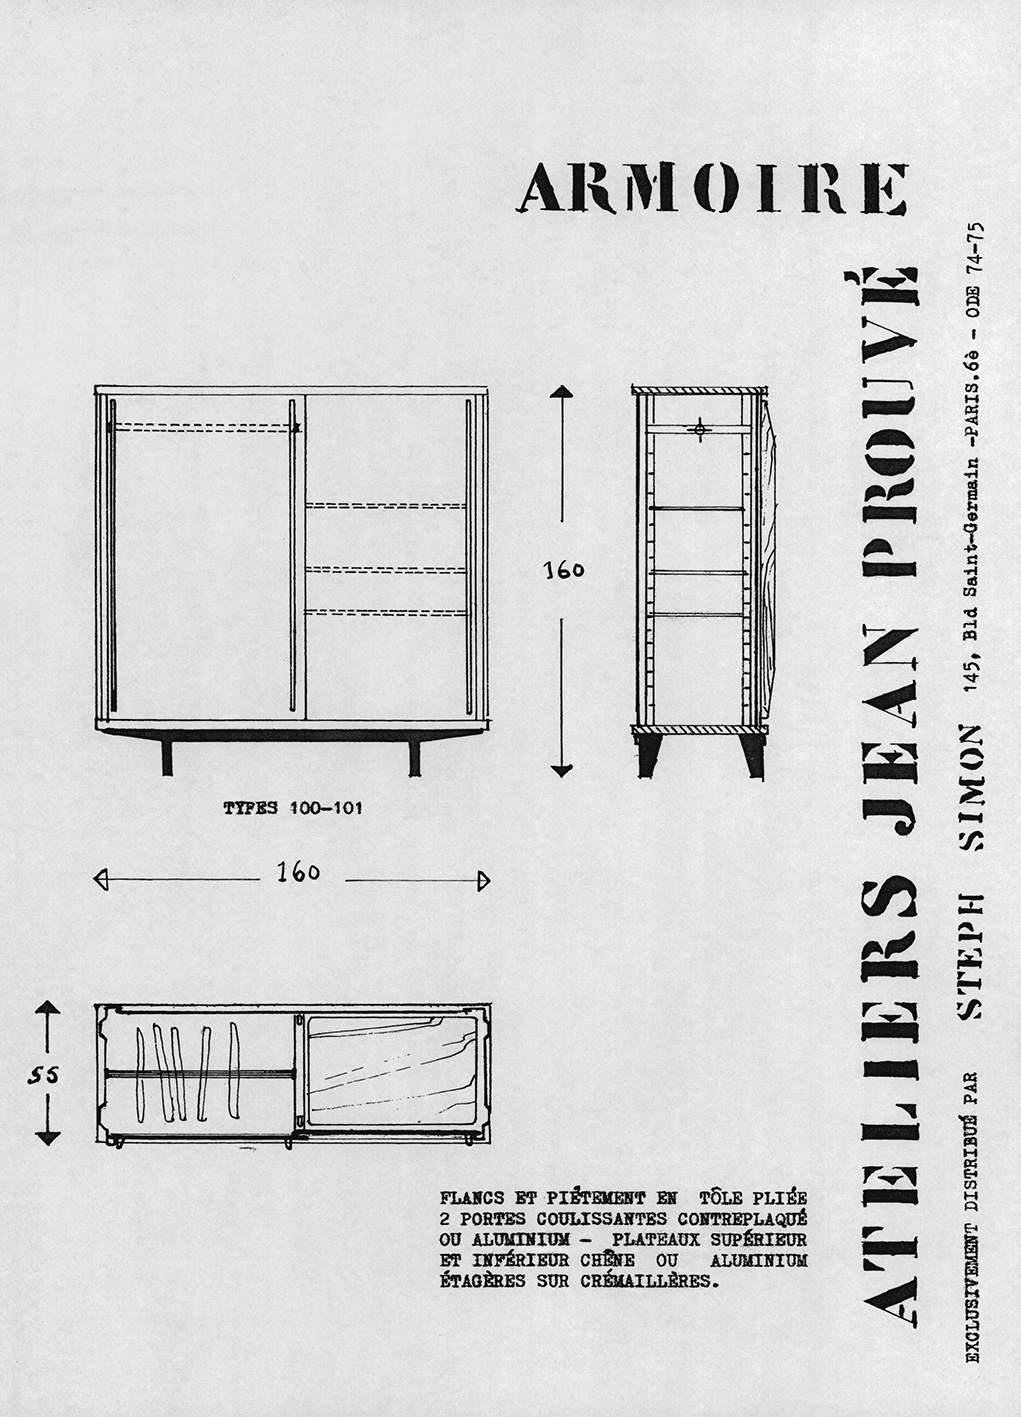 “Armoire Ateliers Jean Prouvé”. Steph Simon presentation sheet, ca. 1956.